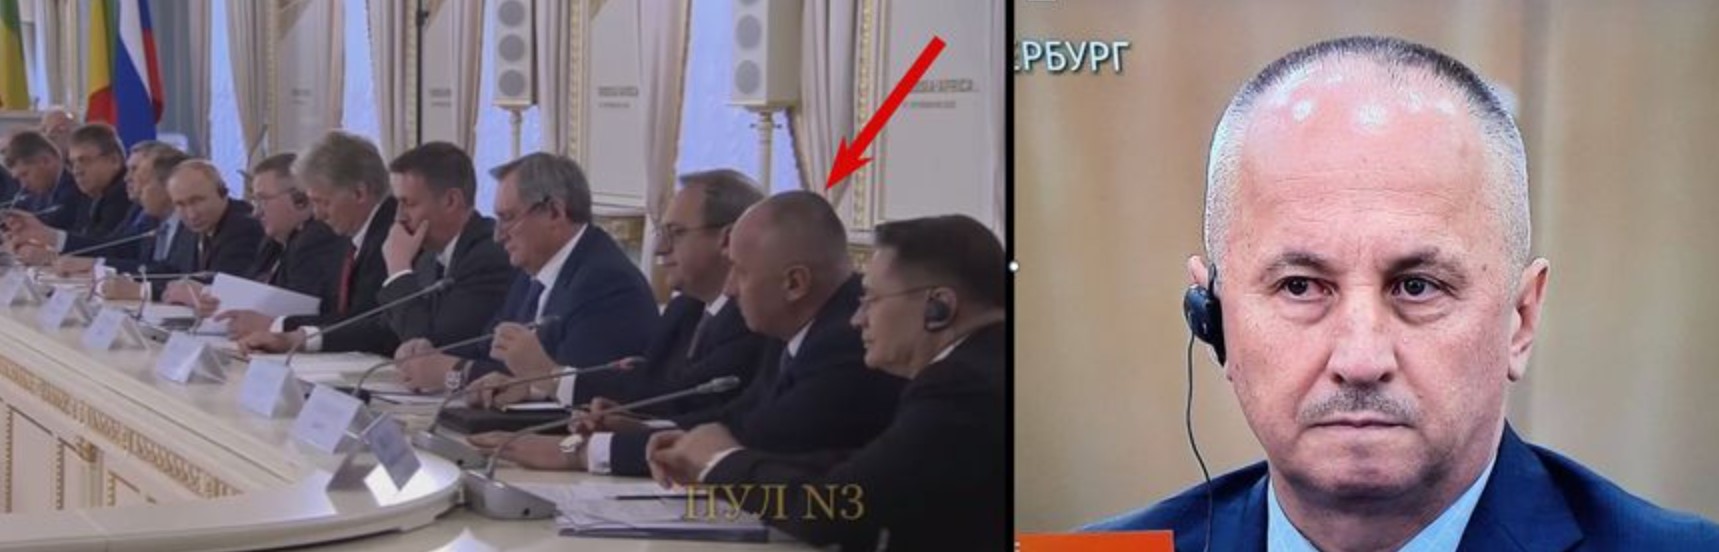 Генерал Авер'янов у складі офіційної російської делегації. Фото: theins.ru